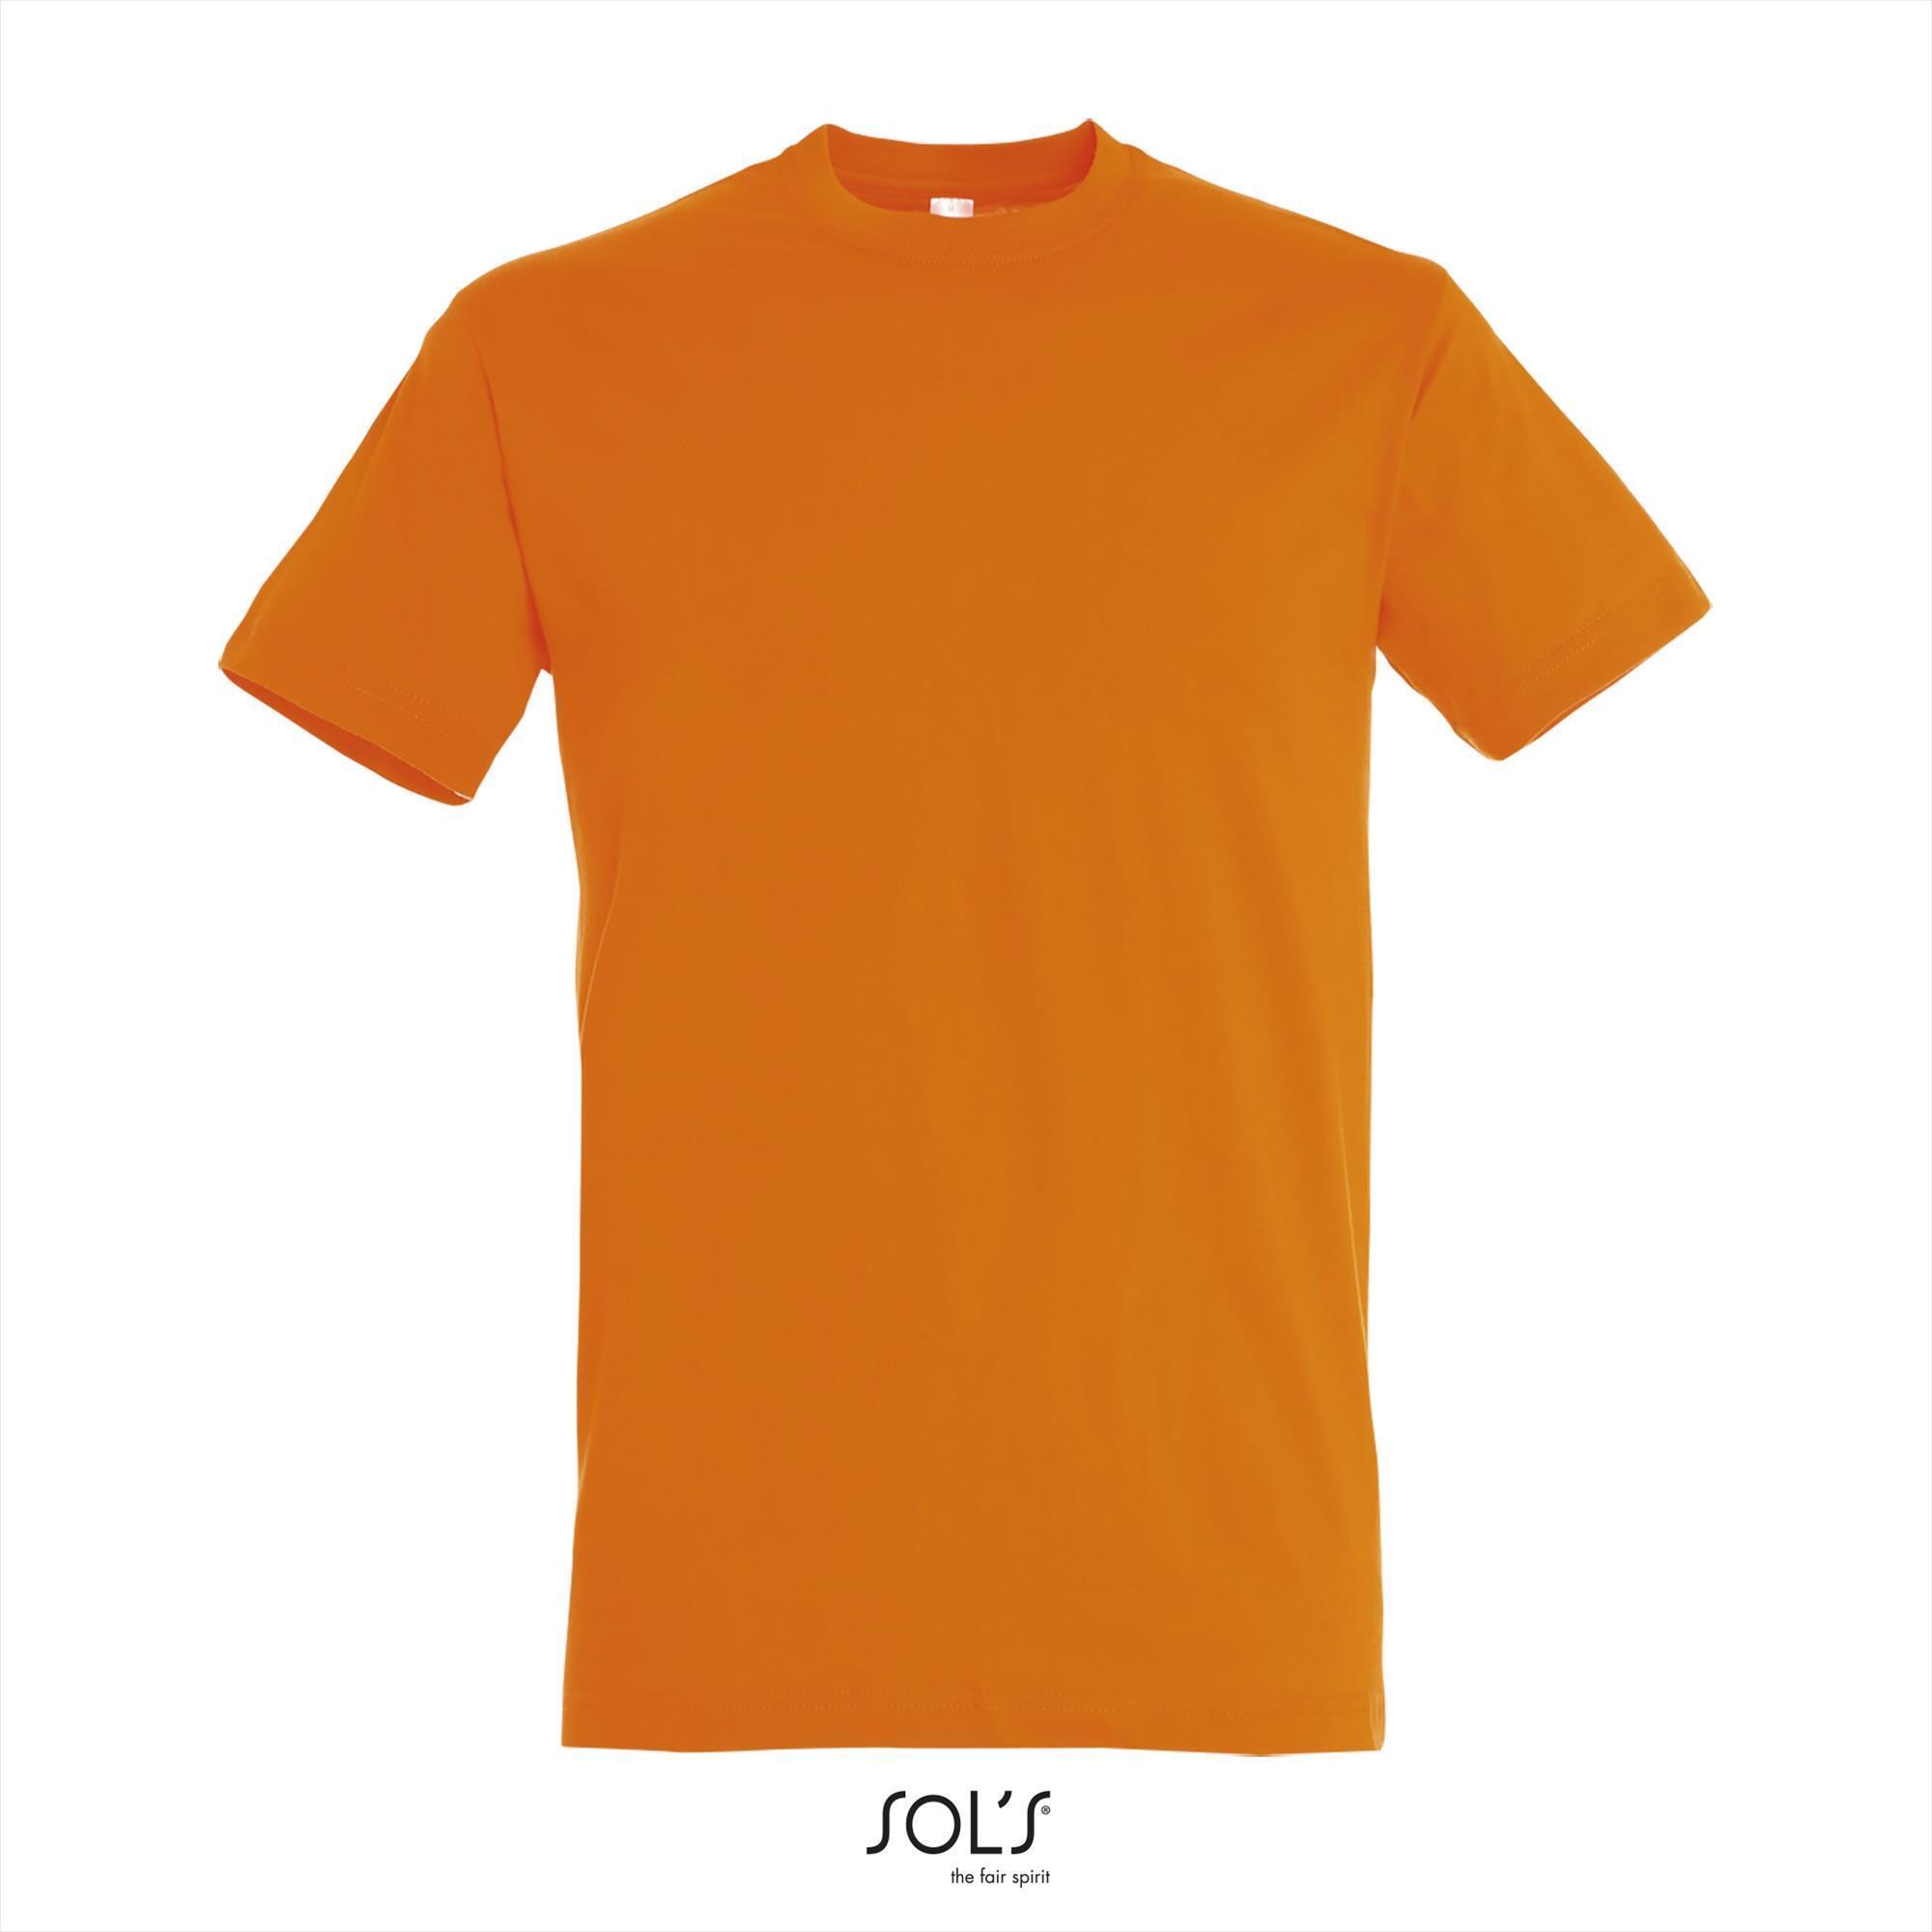 Heren T-shirt met een ronde hals mannen shirt oranje